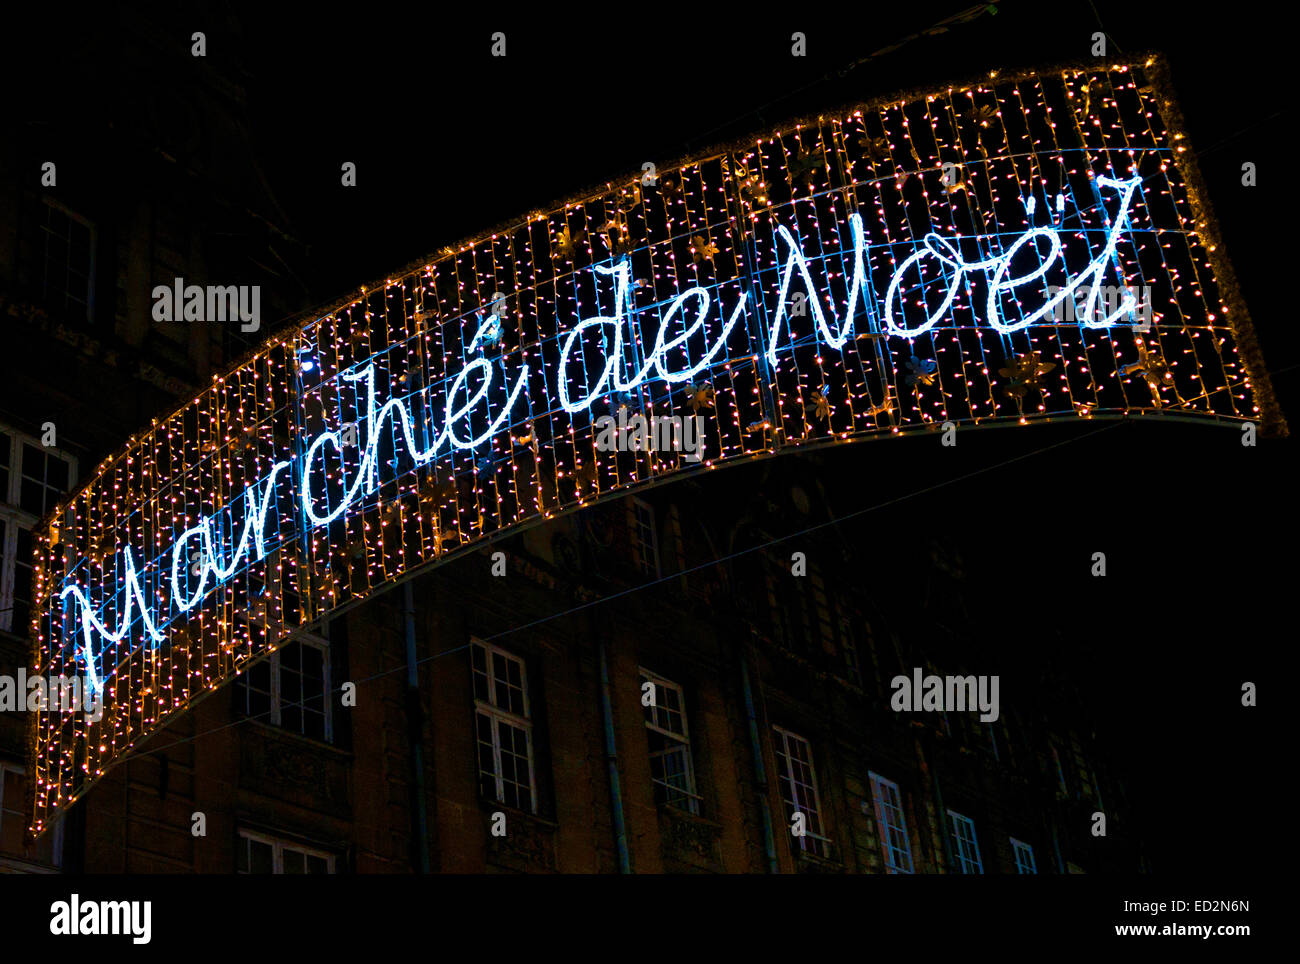 Marche de Noel segno presso il mercato di Natale, Arras, nel nord della Francia Foto Stock